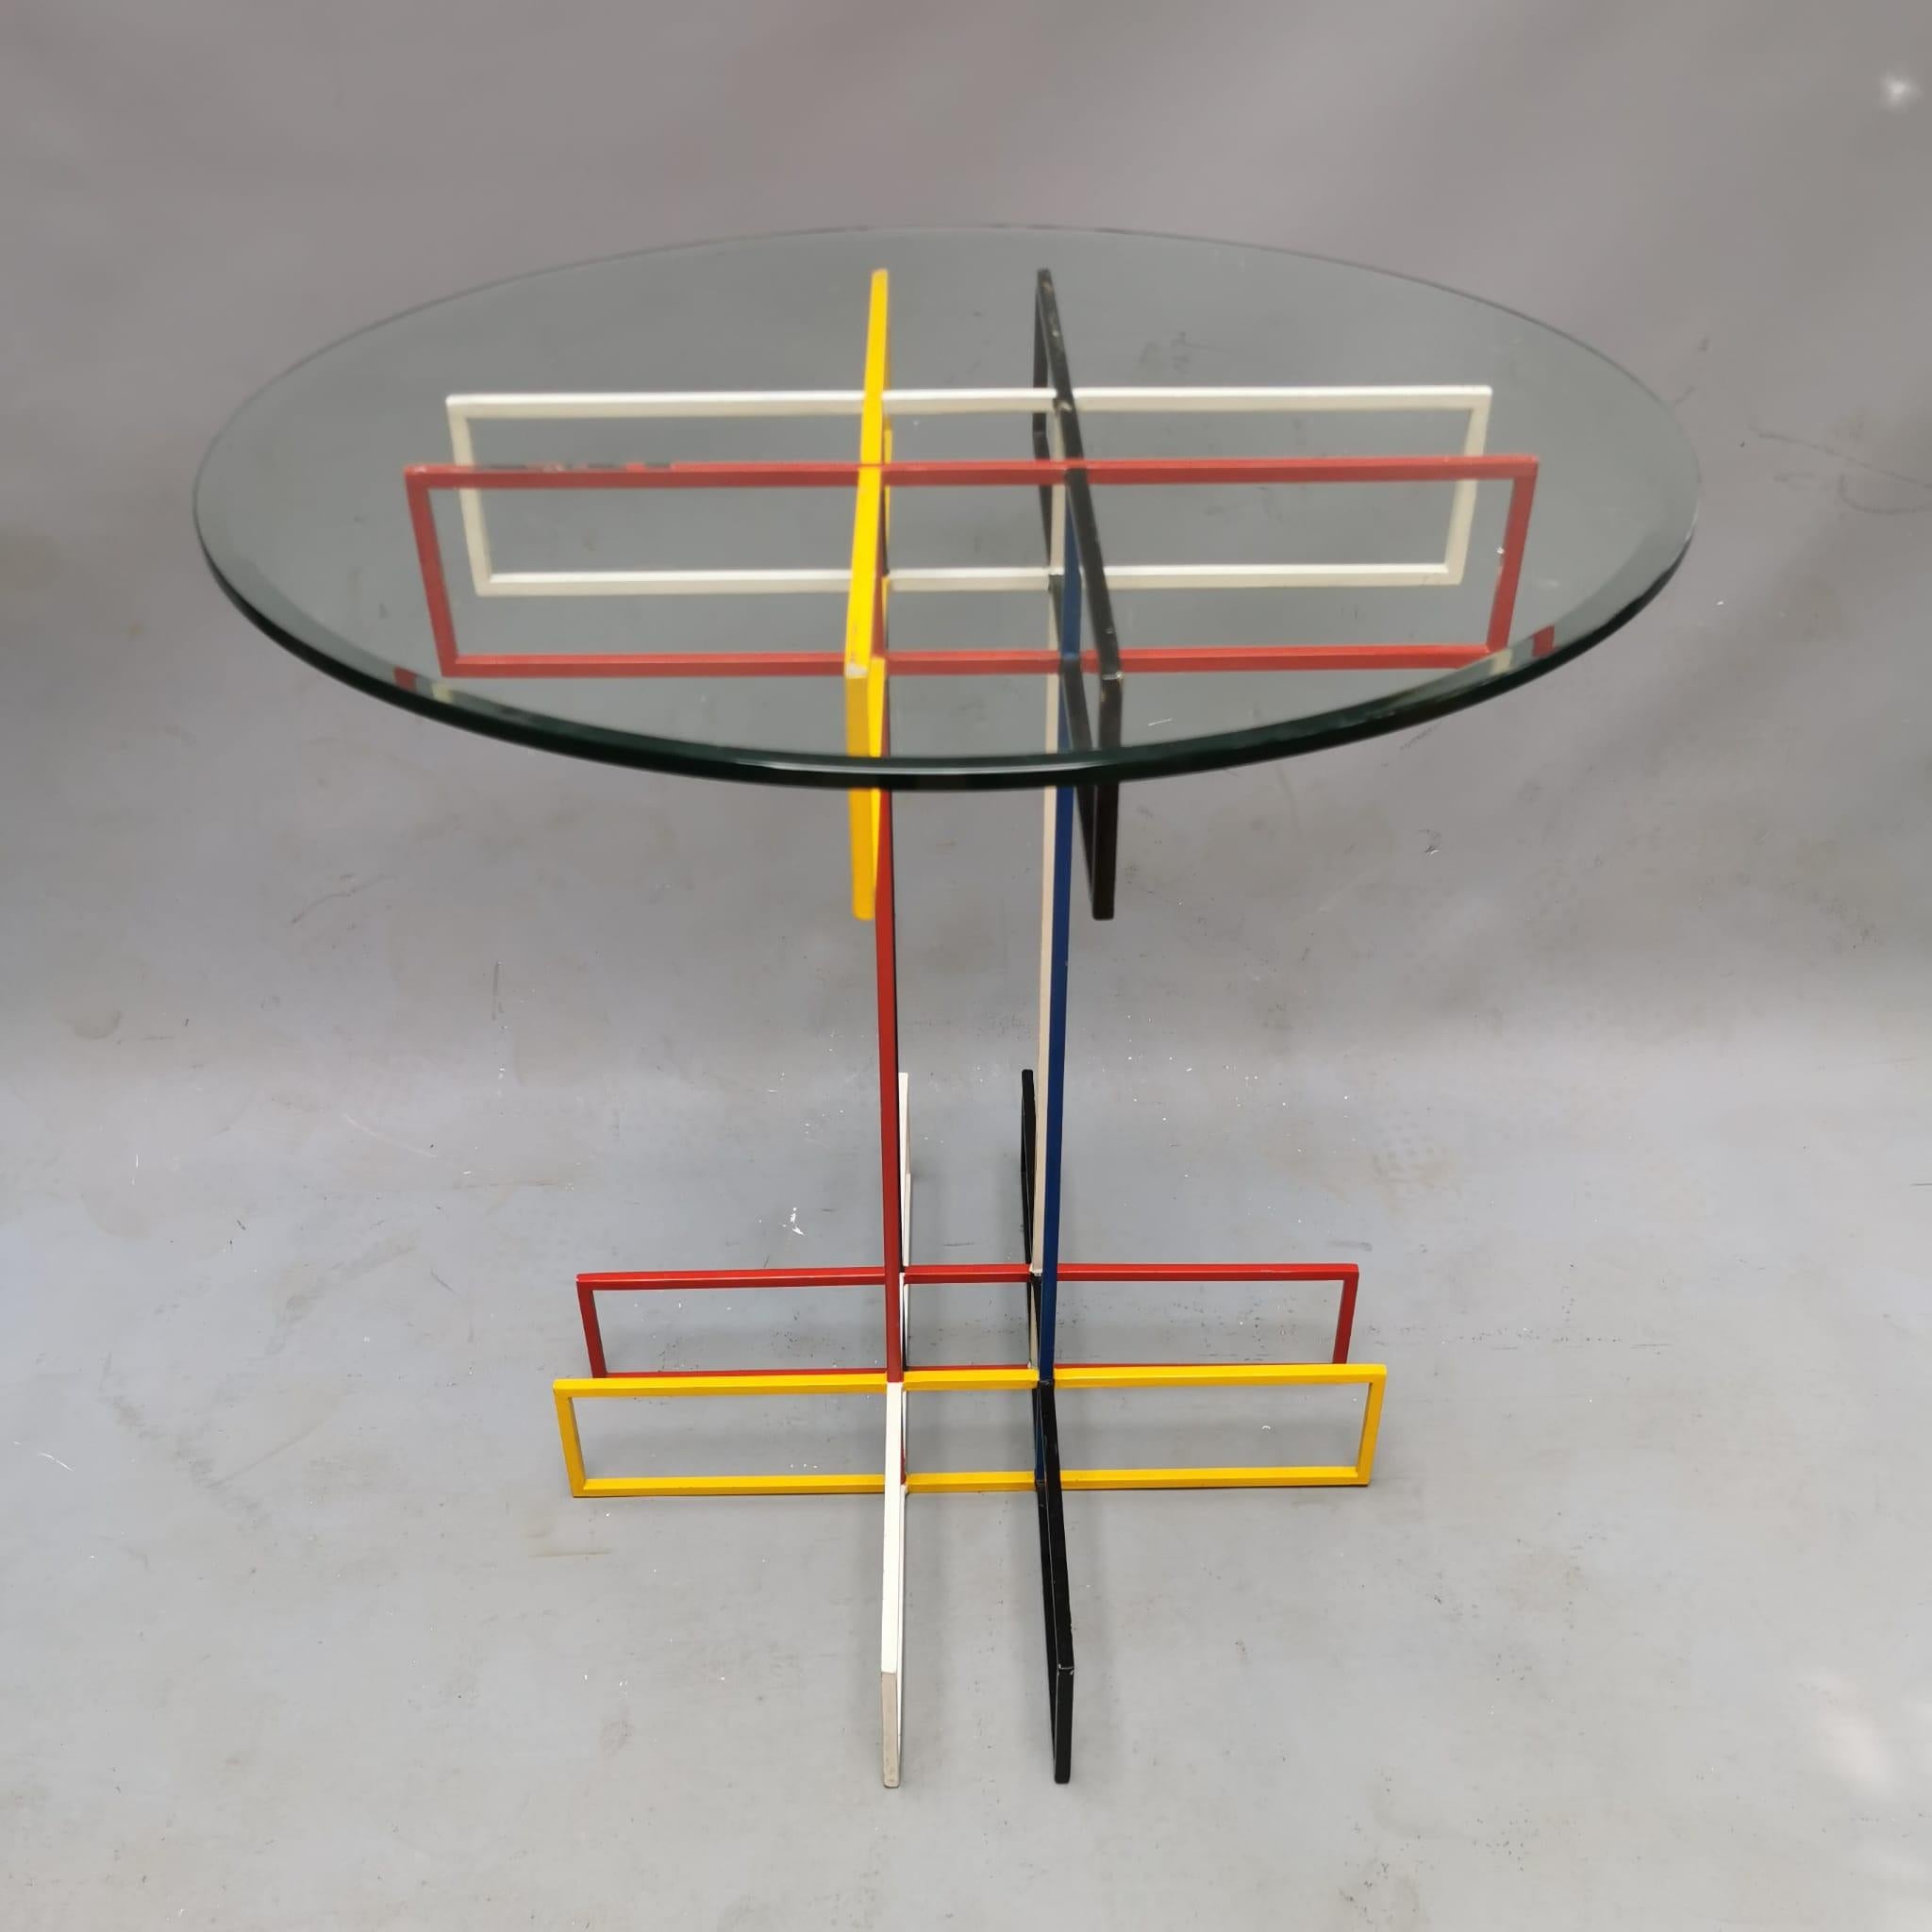 Une table inspirée de l'œuvre artistique de Piet Mondrian, avec ces pieds métalliques élancés colorés en rouge, jaune, bleu et noir. Une référence claire au travail de l'artiste néerlandais, cette table s'intègre comme un objet unique dans une